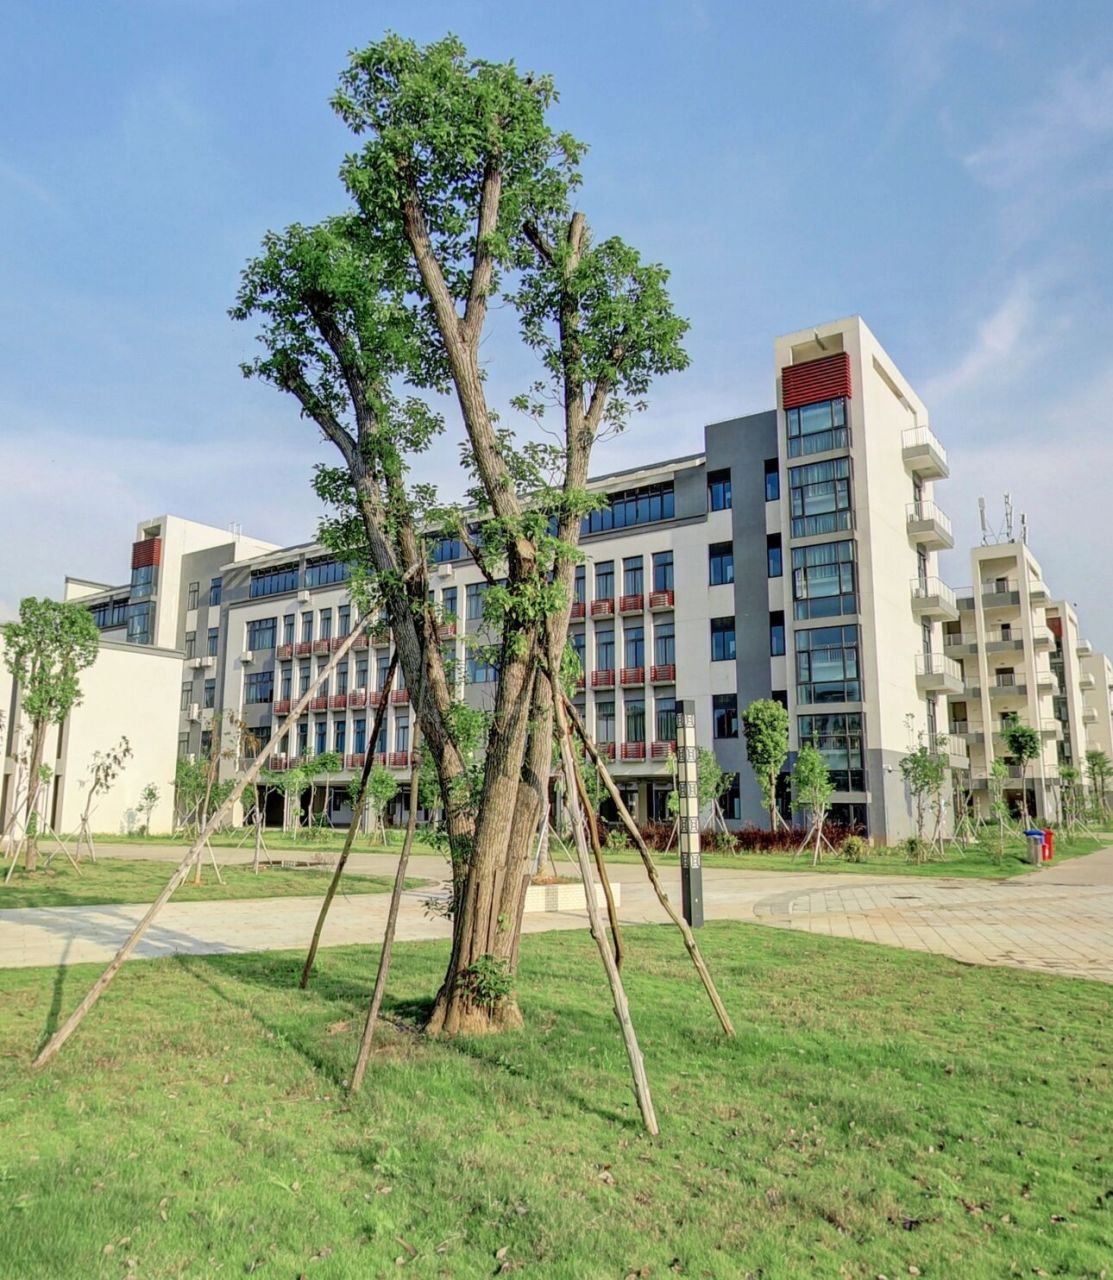 广东省轻工业技师学院 广东省轻工业技师学院创建于1974年,广东省人民